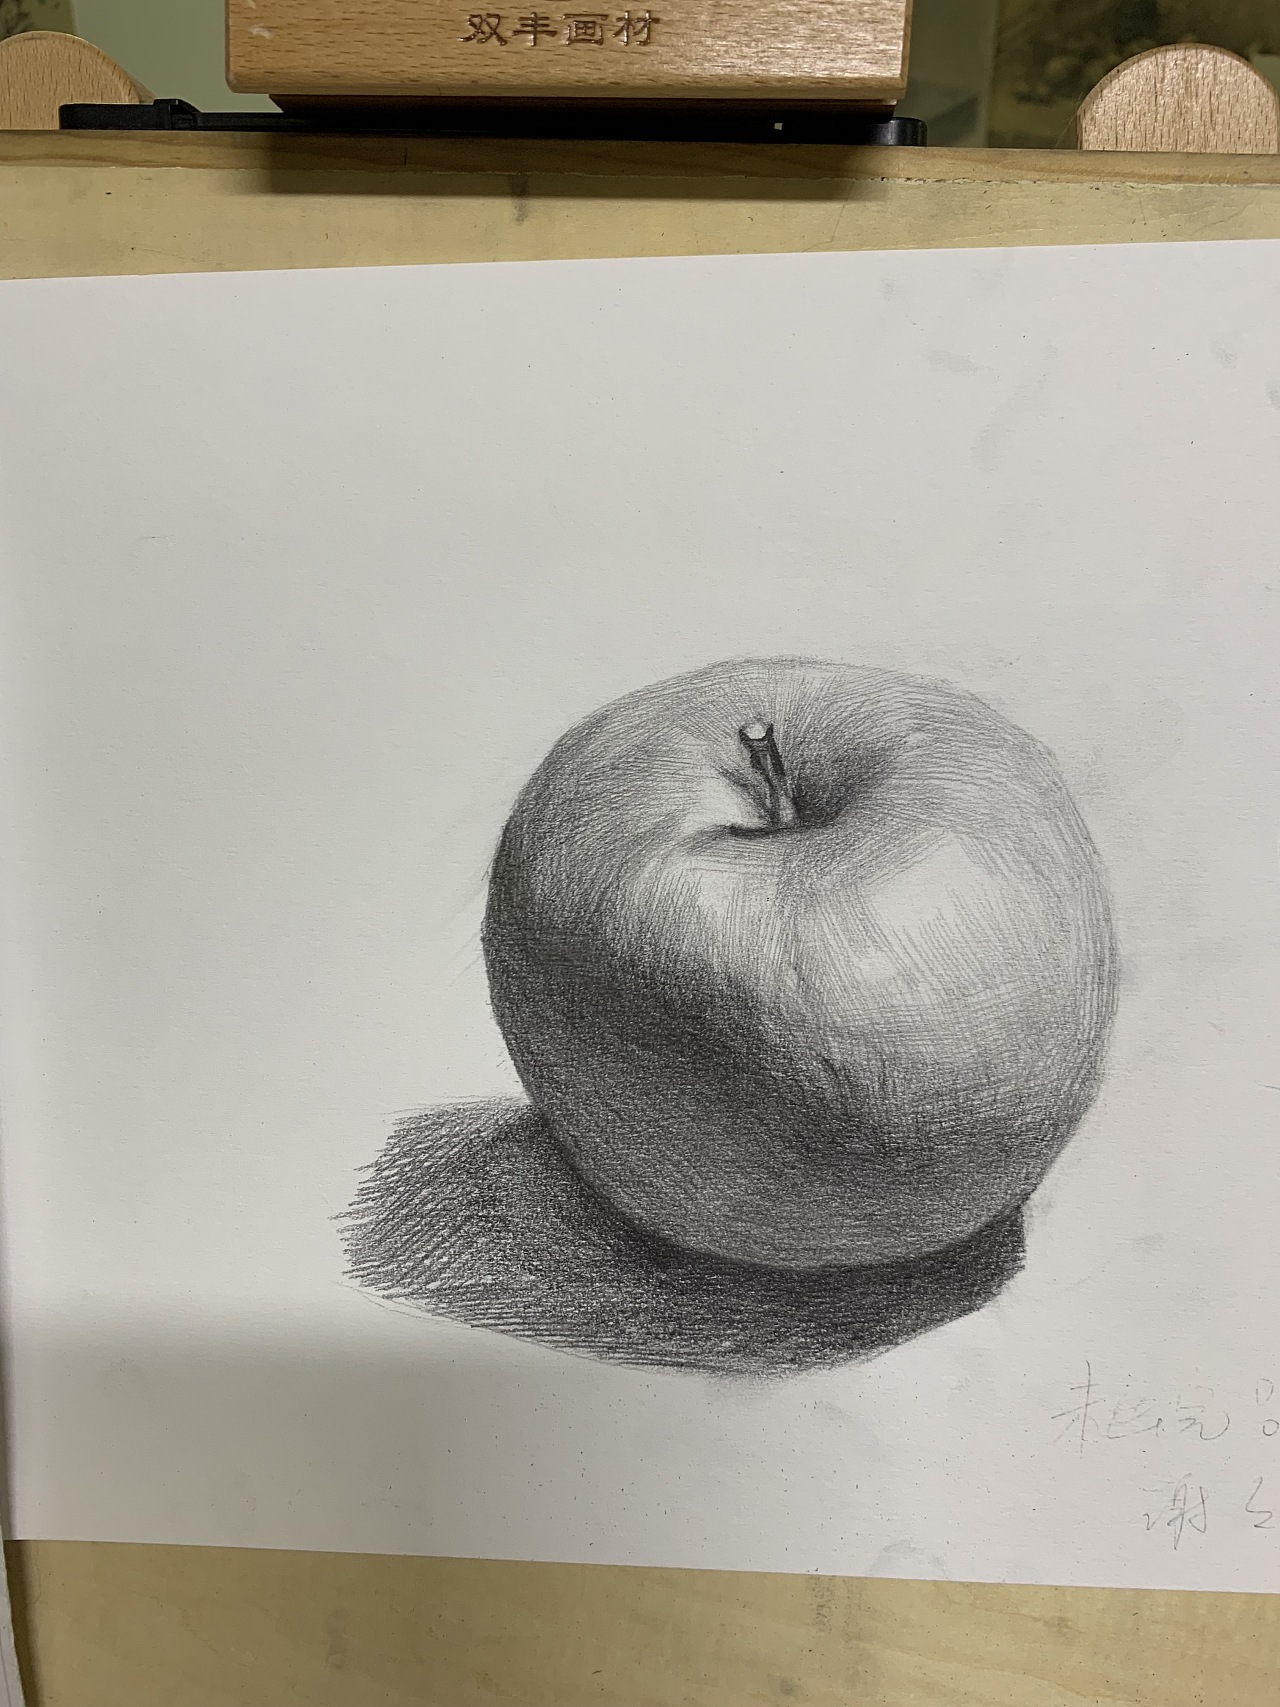 简笔素描简单水果图片